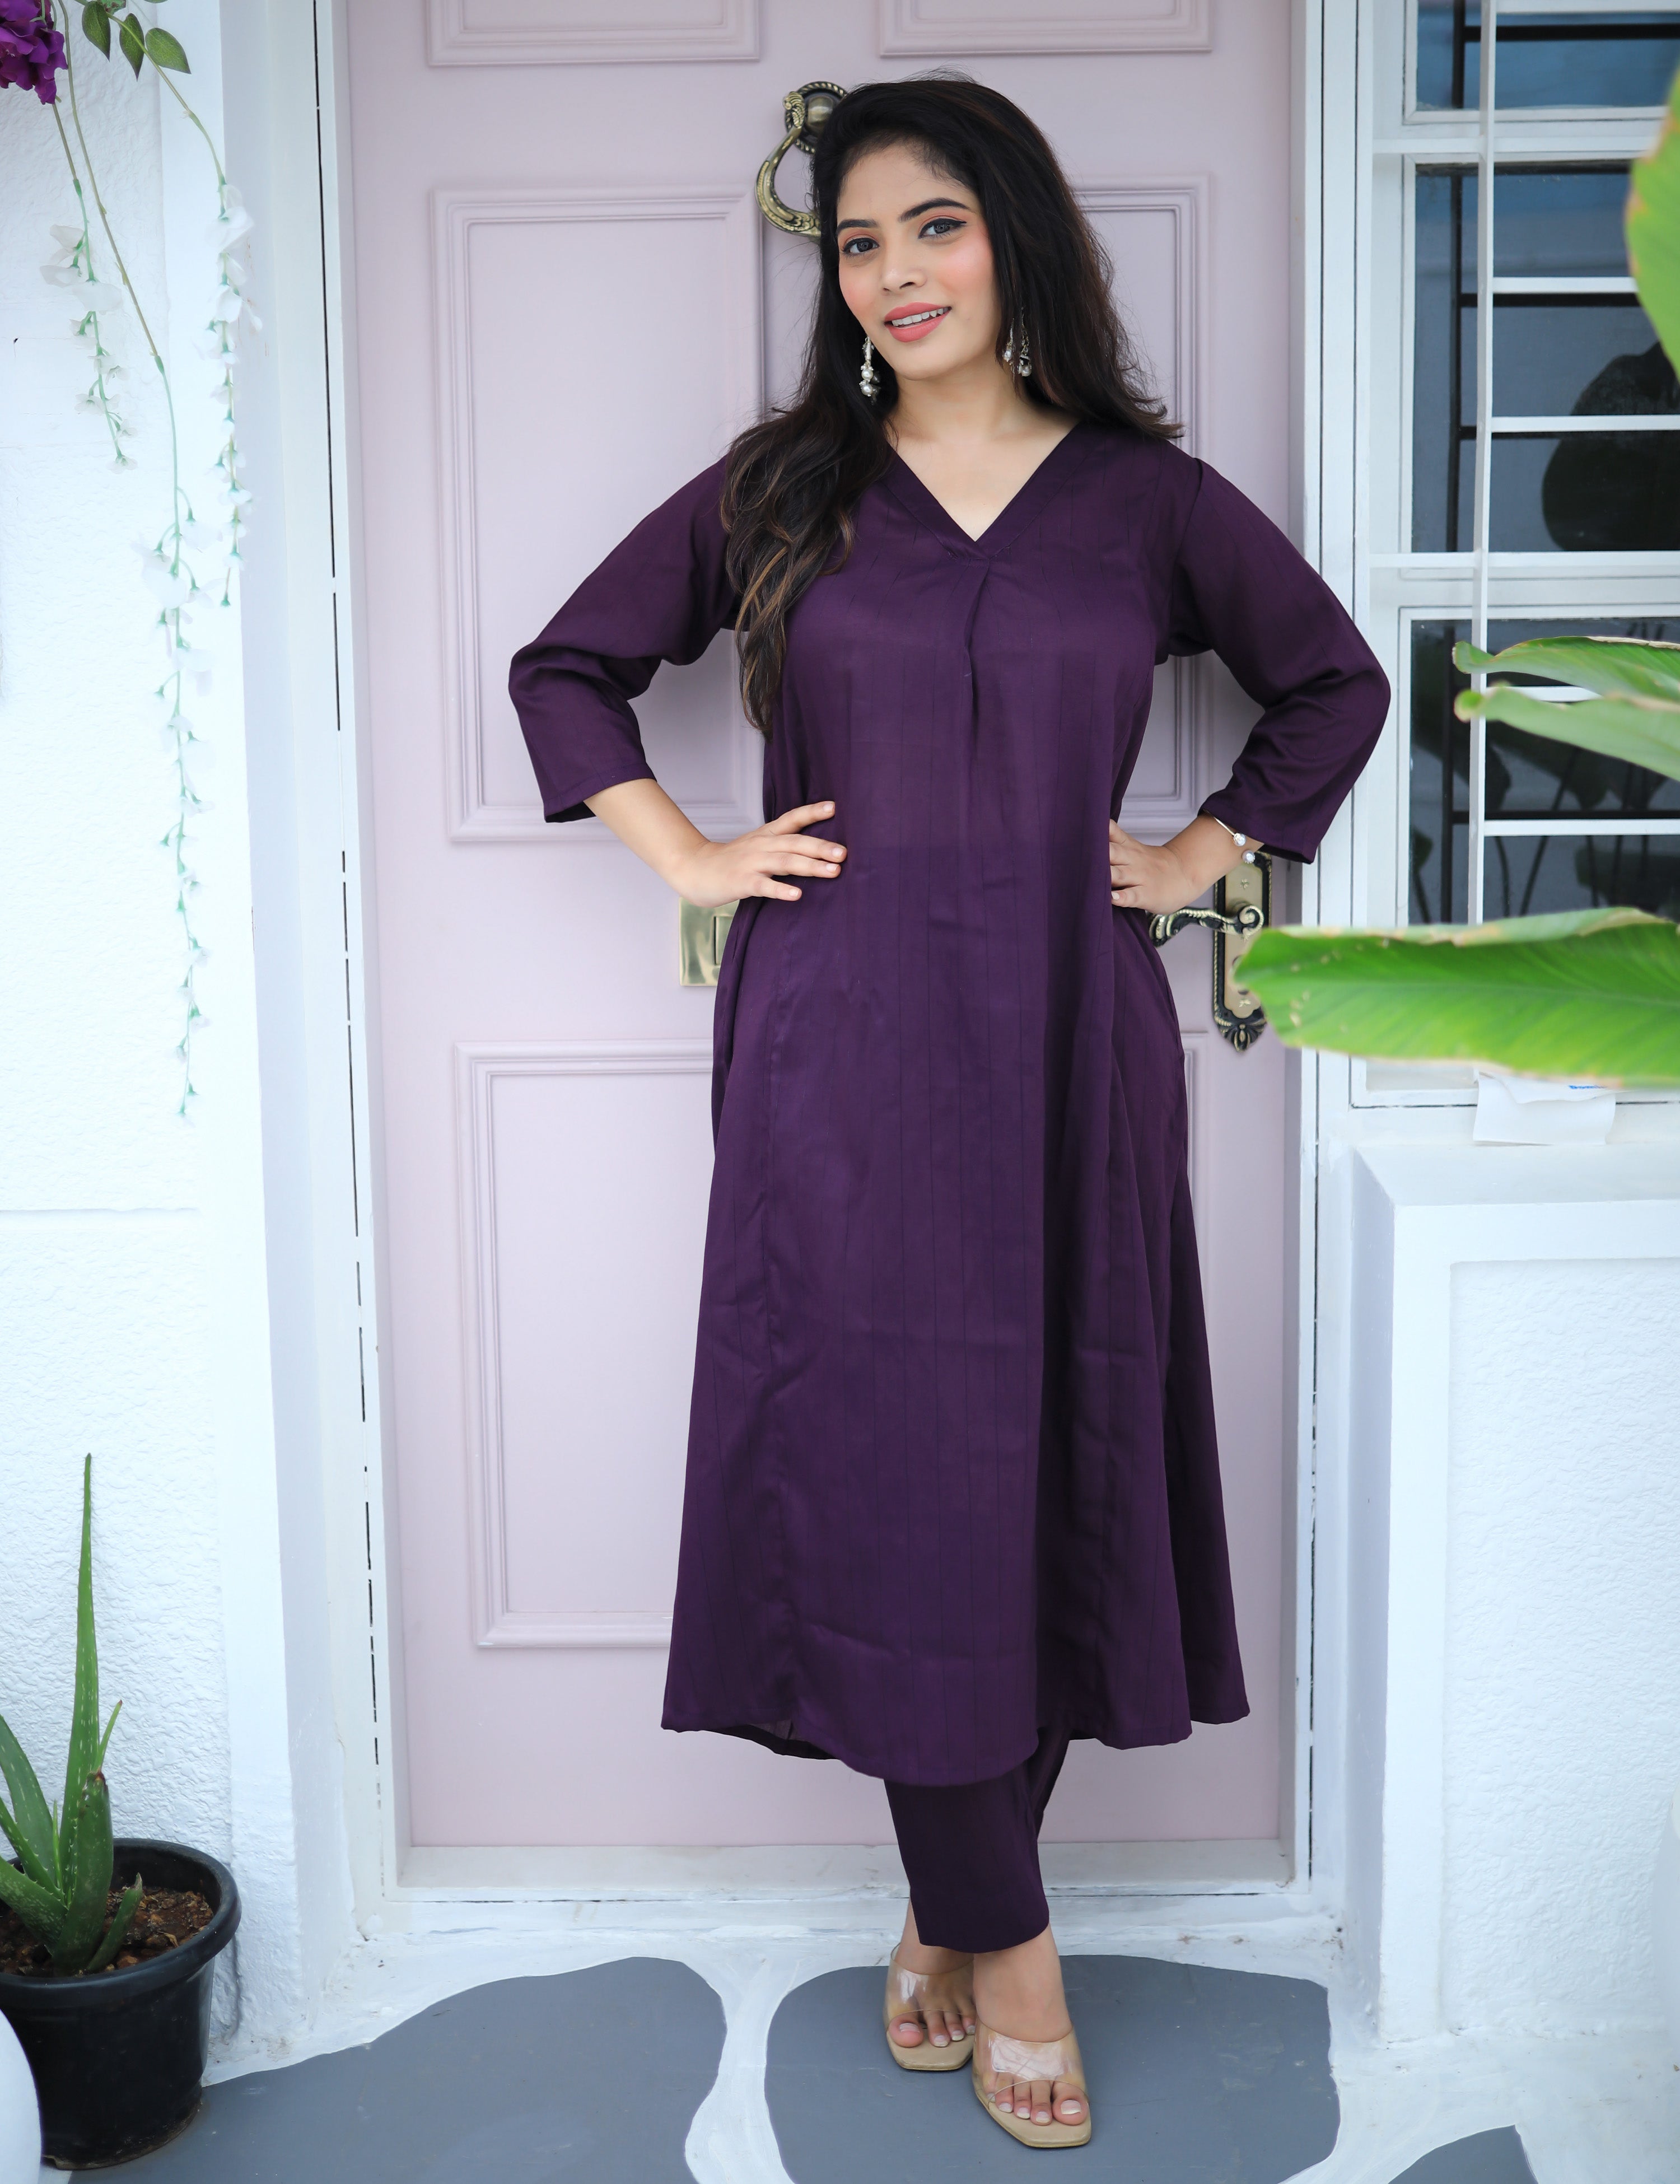 Details more than 138 plain purple kurti designs best